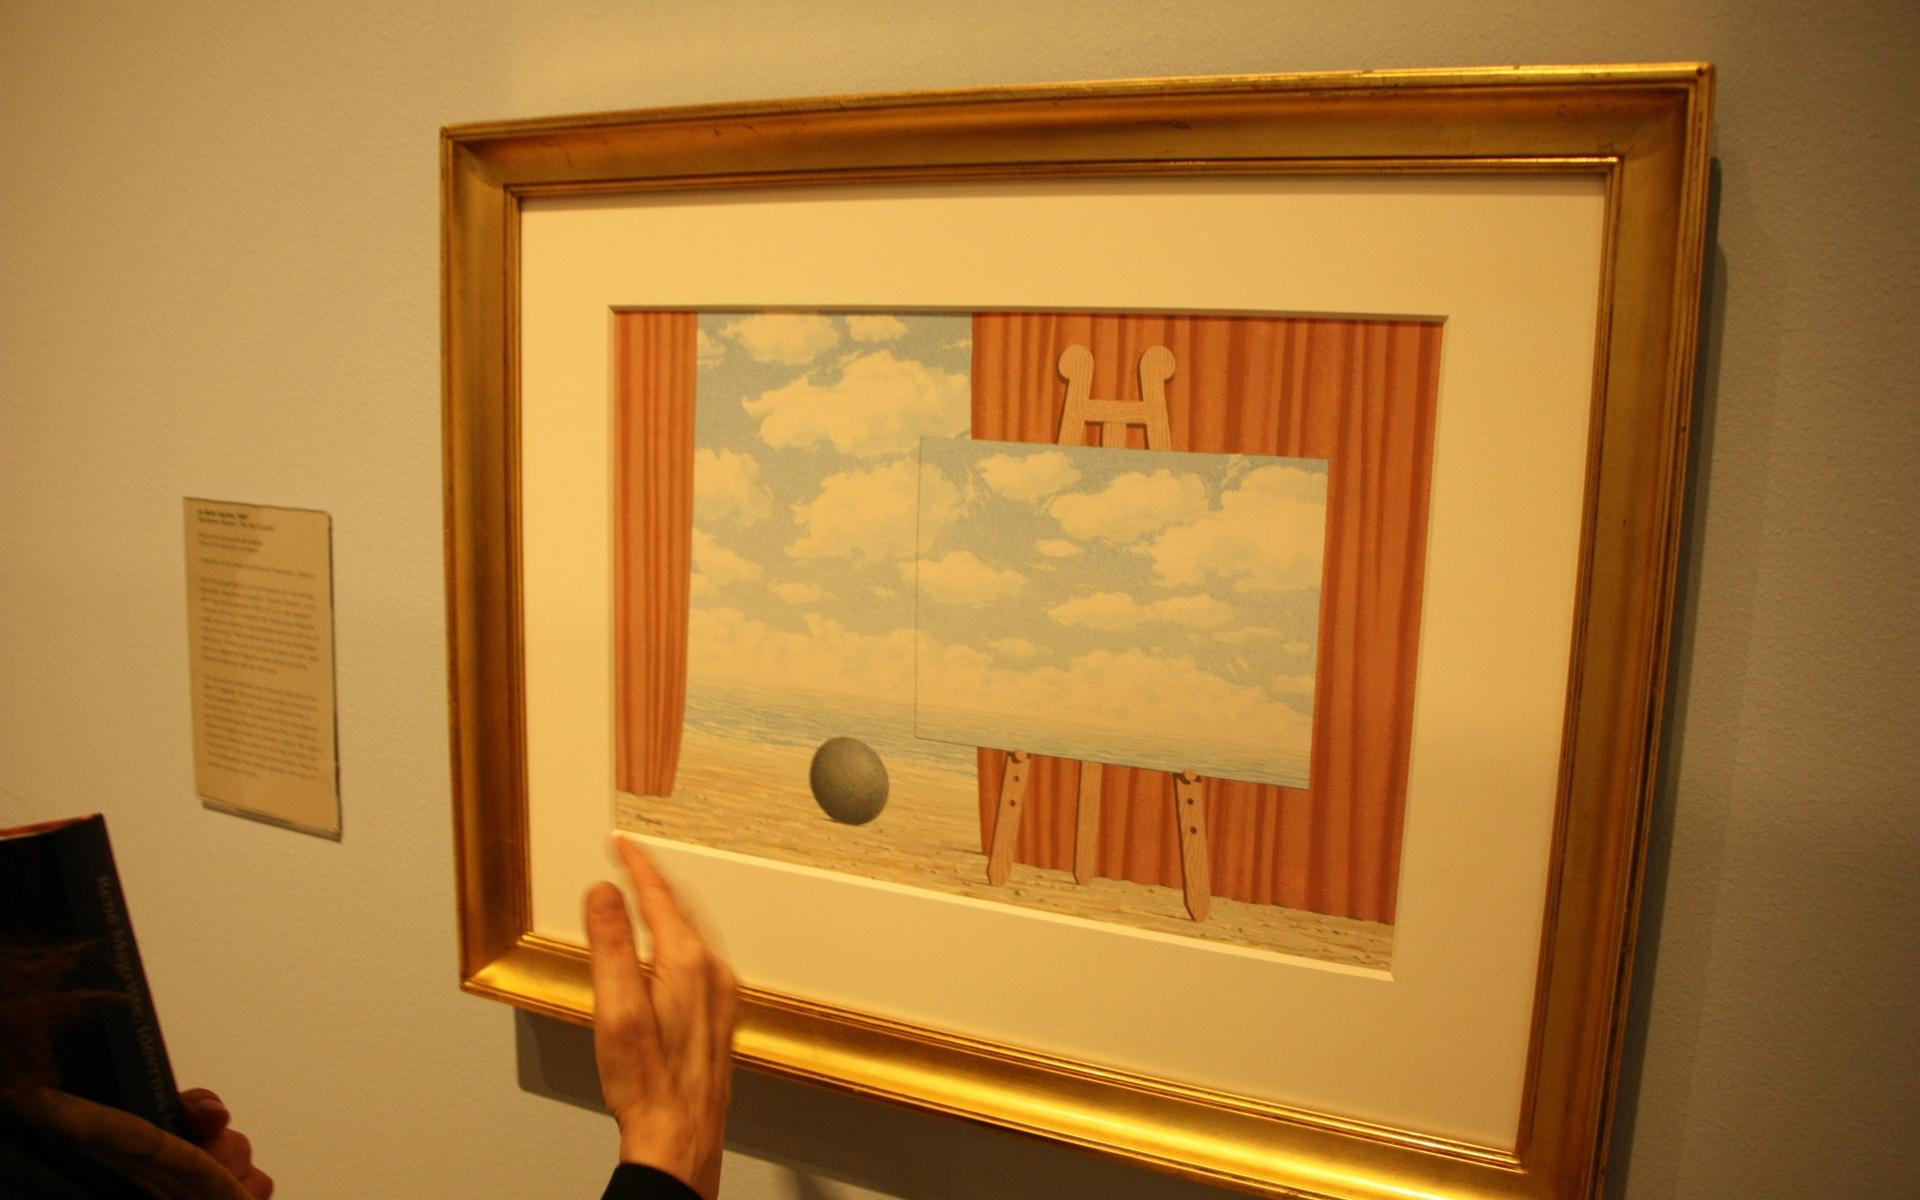 En bild i bilden och en obegriplig kula mitt i alltihop. René Magritte utmanar logiken!